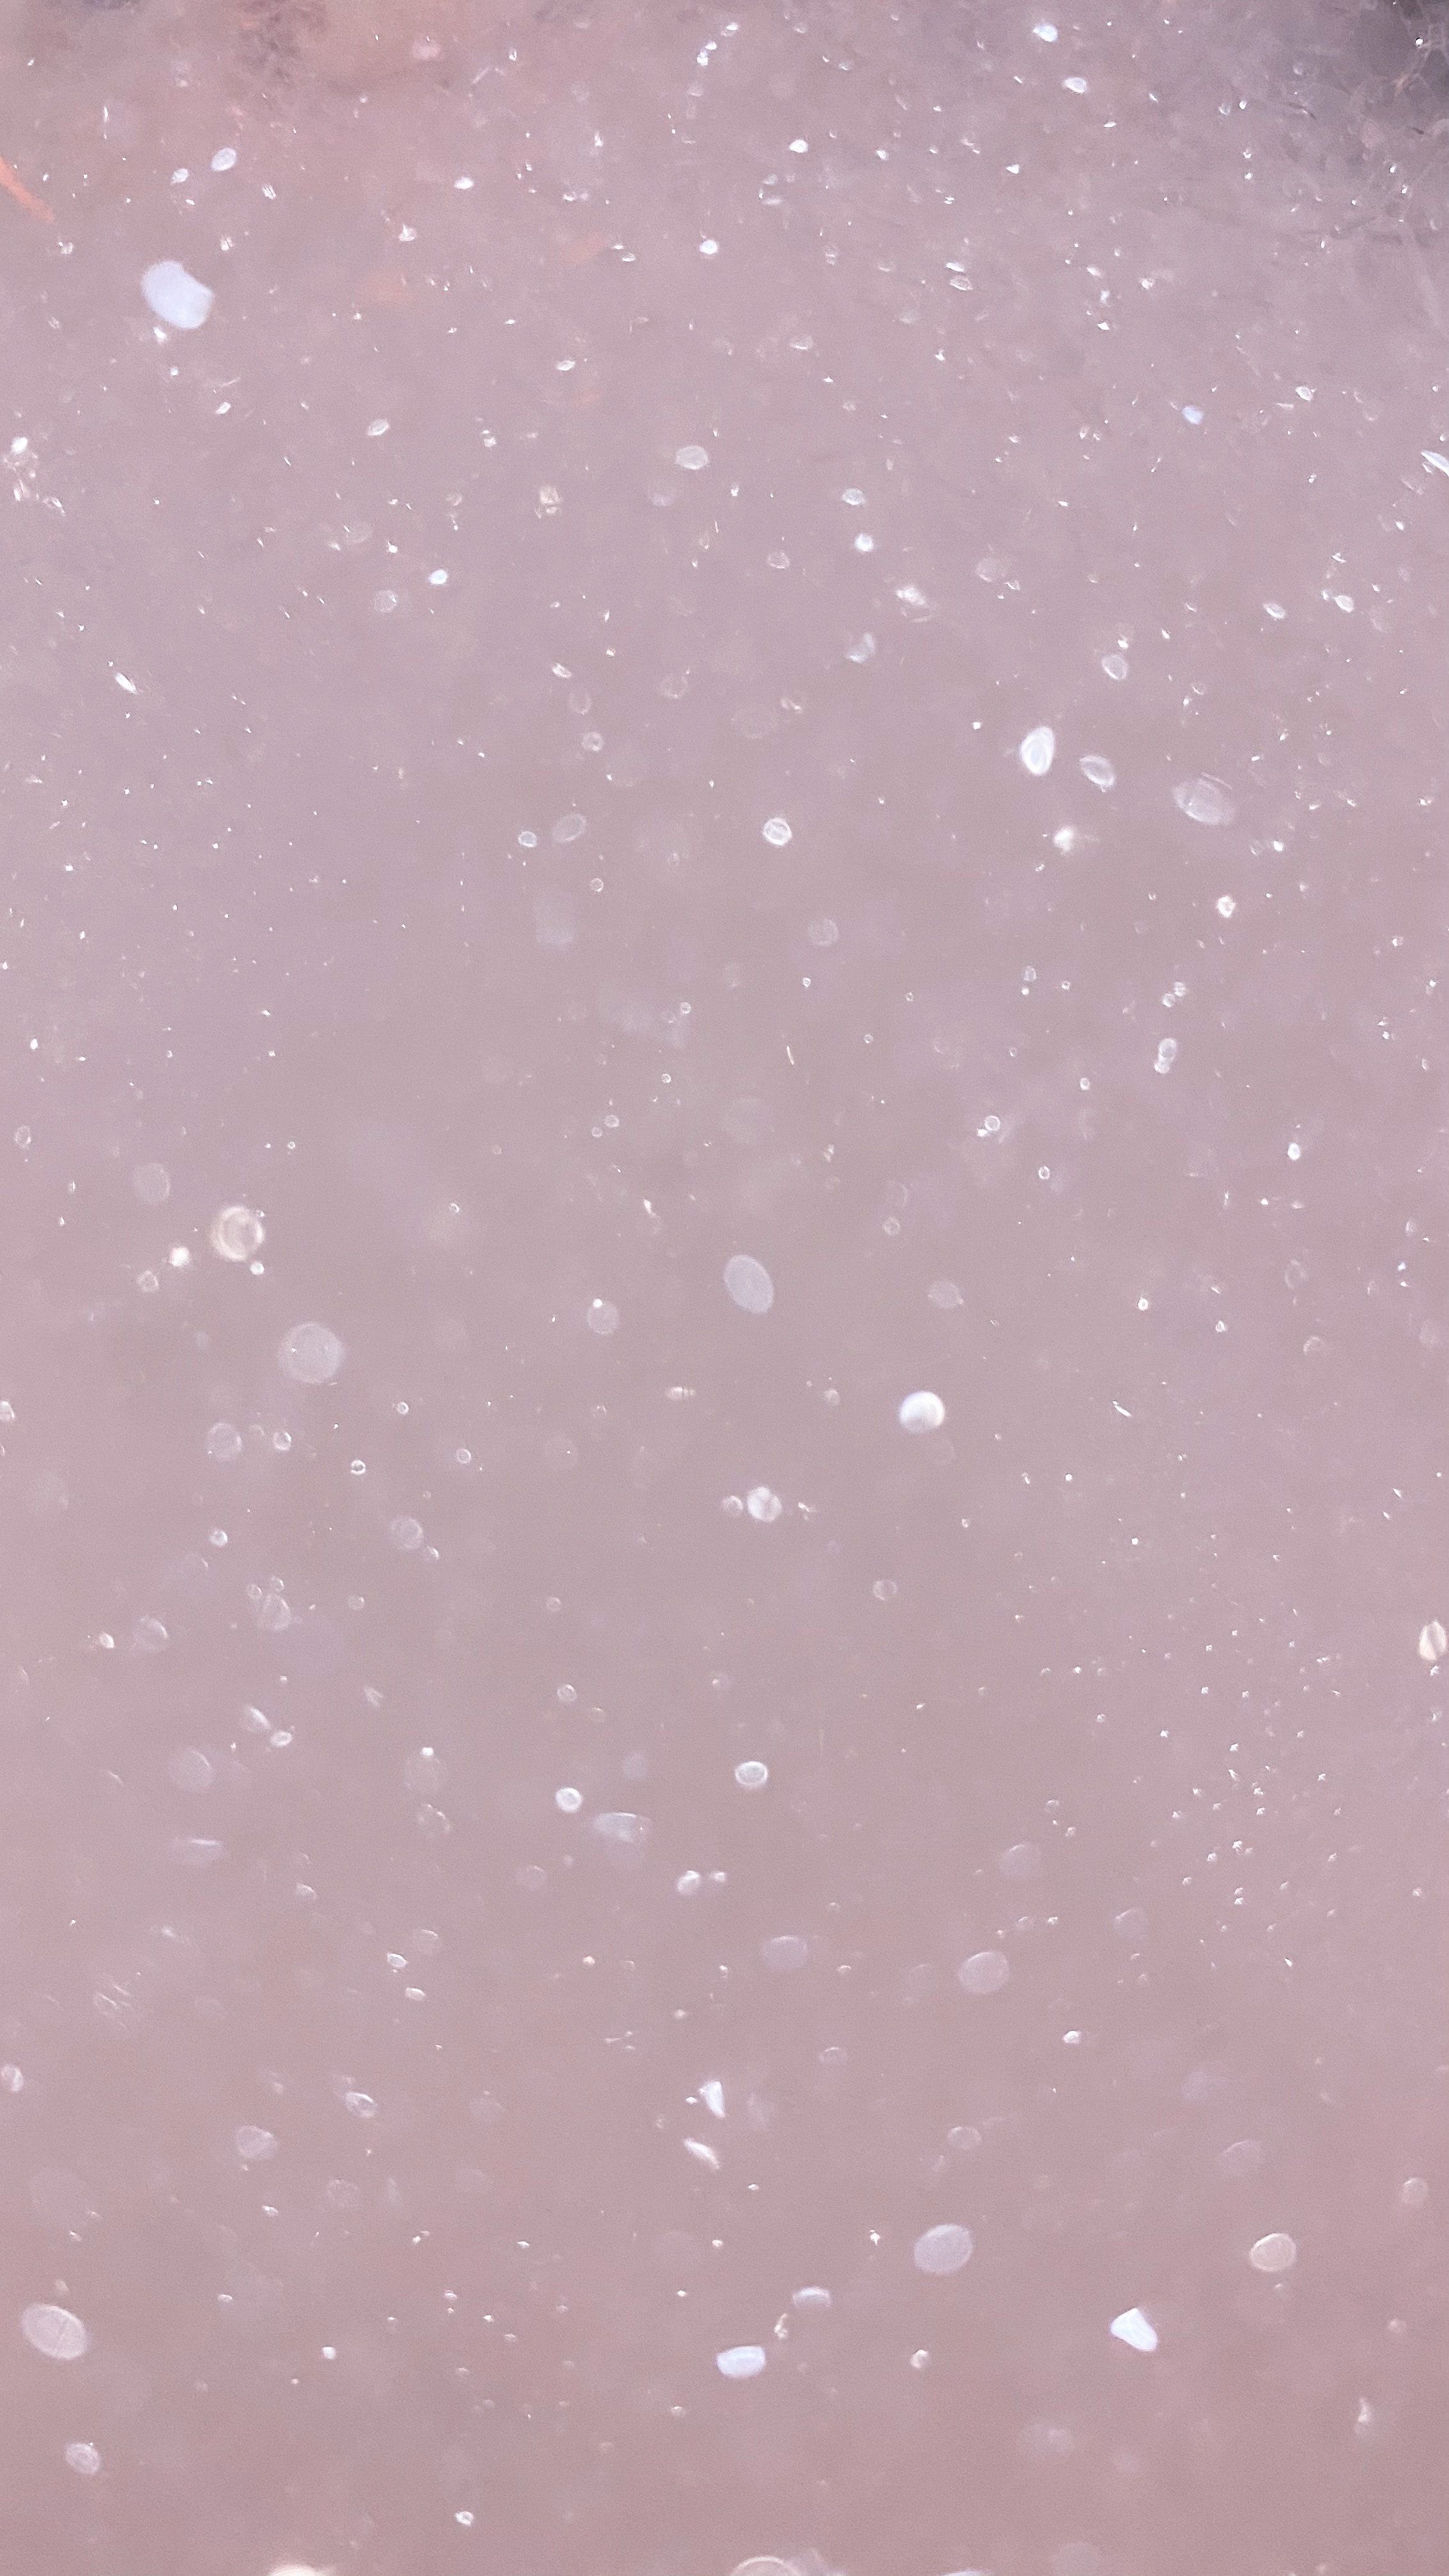  Glitzer Schöne Hintergrundbild 2268x4032. Kostenloses Foto zum Thema: abstrakt, blasen, blowing bubbles, funkeln, glitzer hintergrund, glitzertapete, hintergrund, luftblasen, muster, pink, seifenblasen, textur, wallpaper